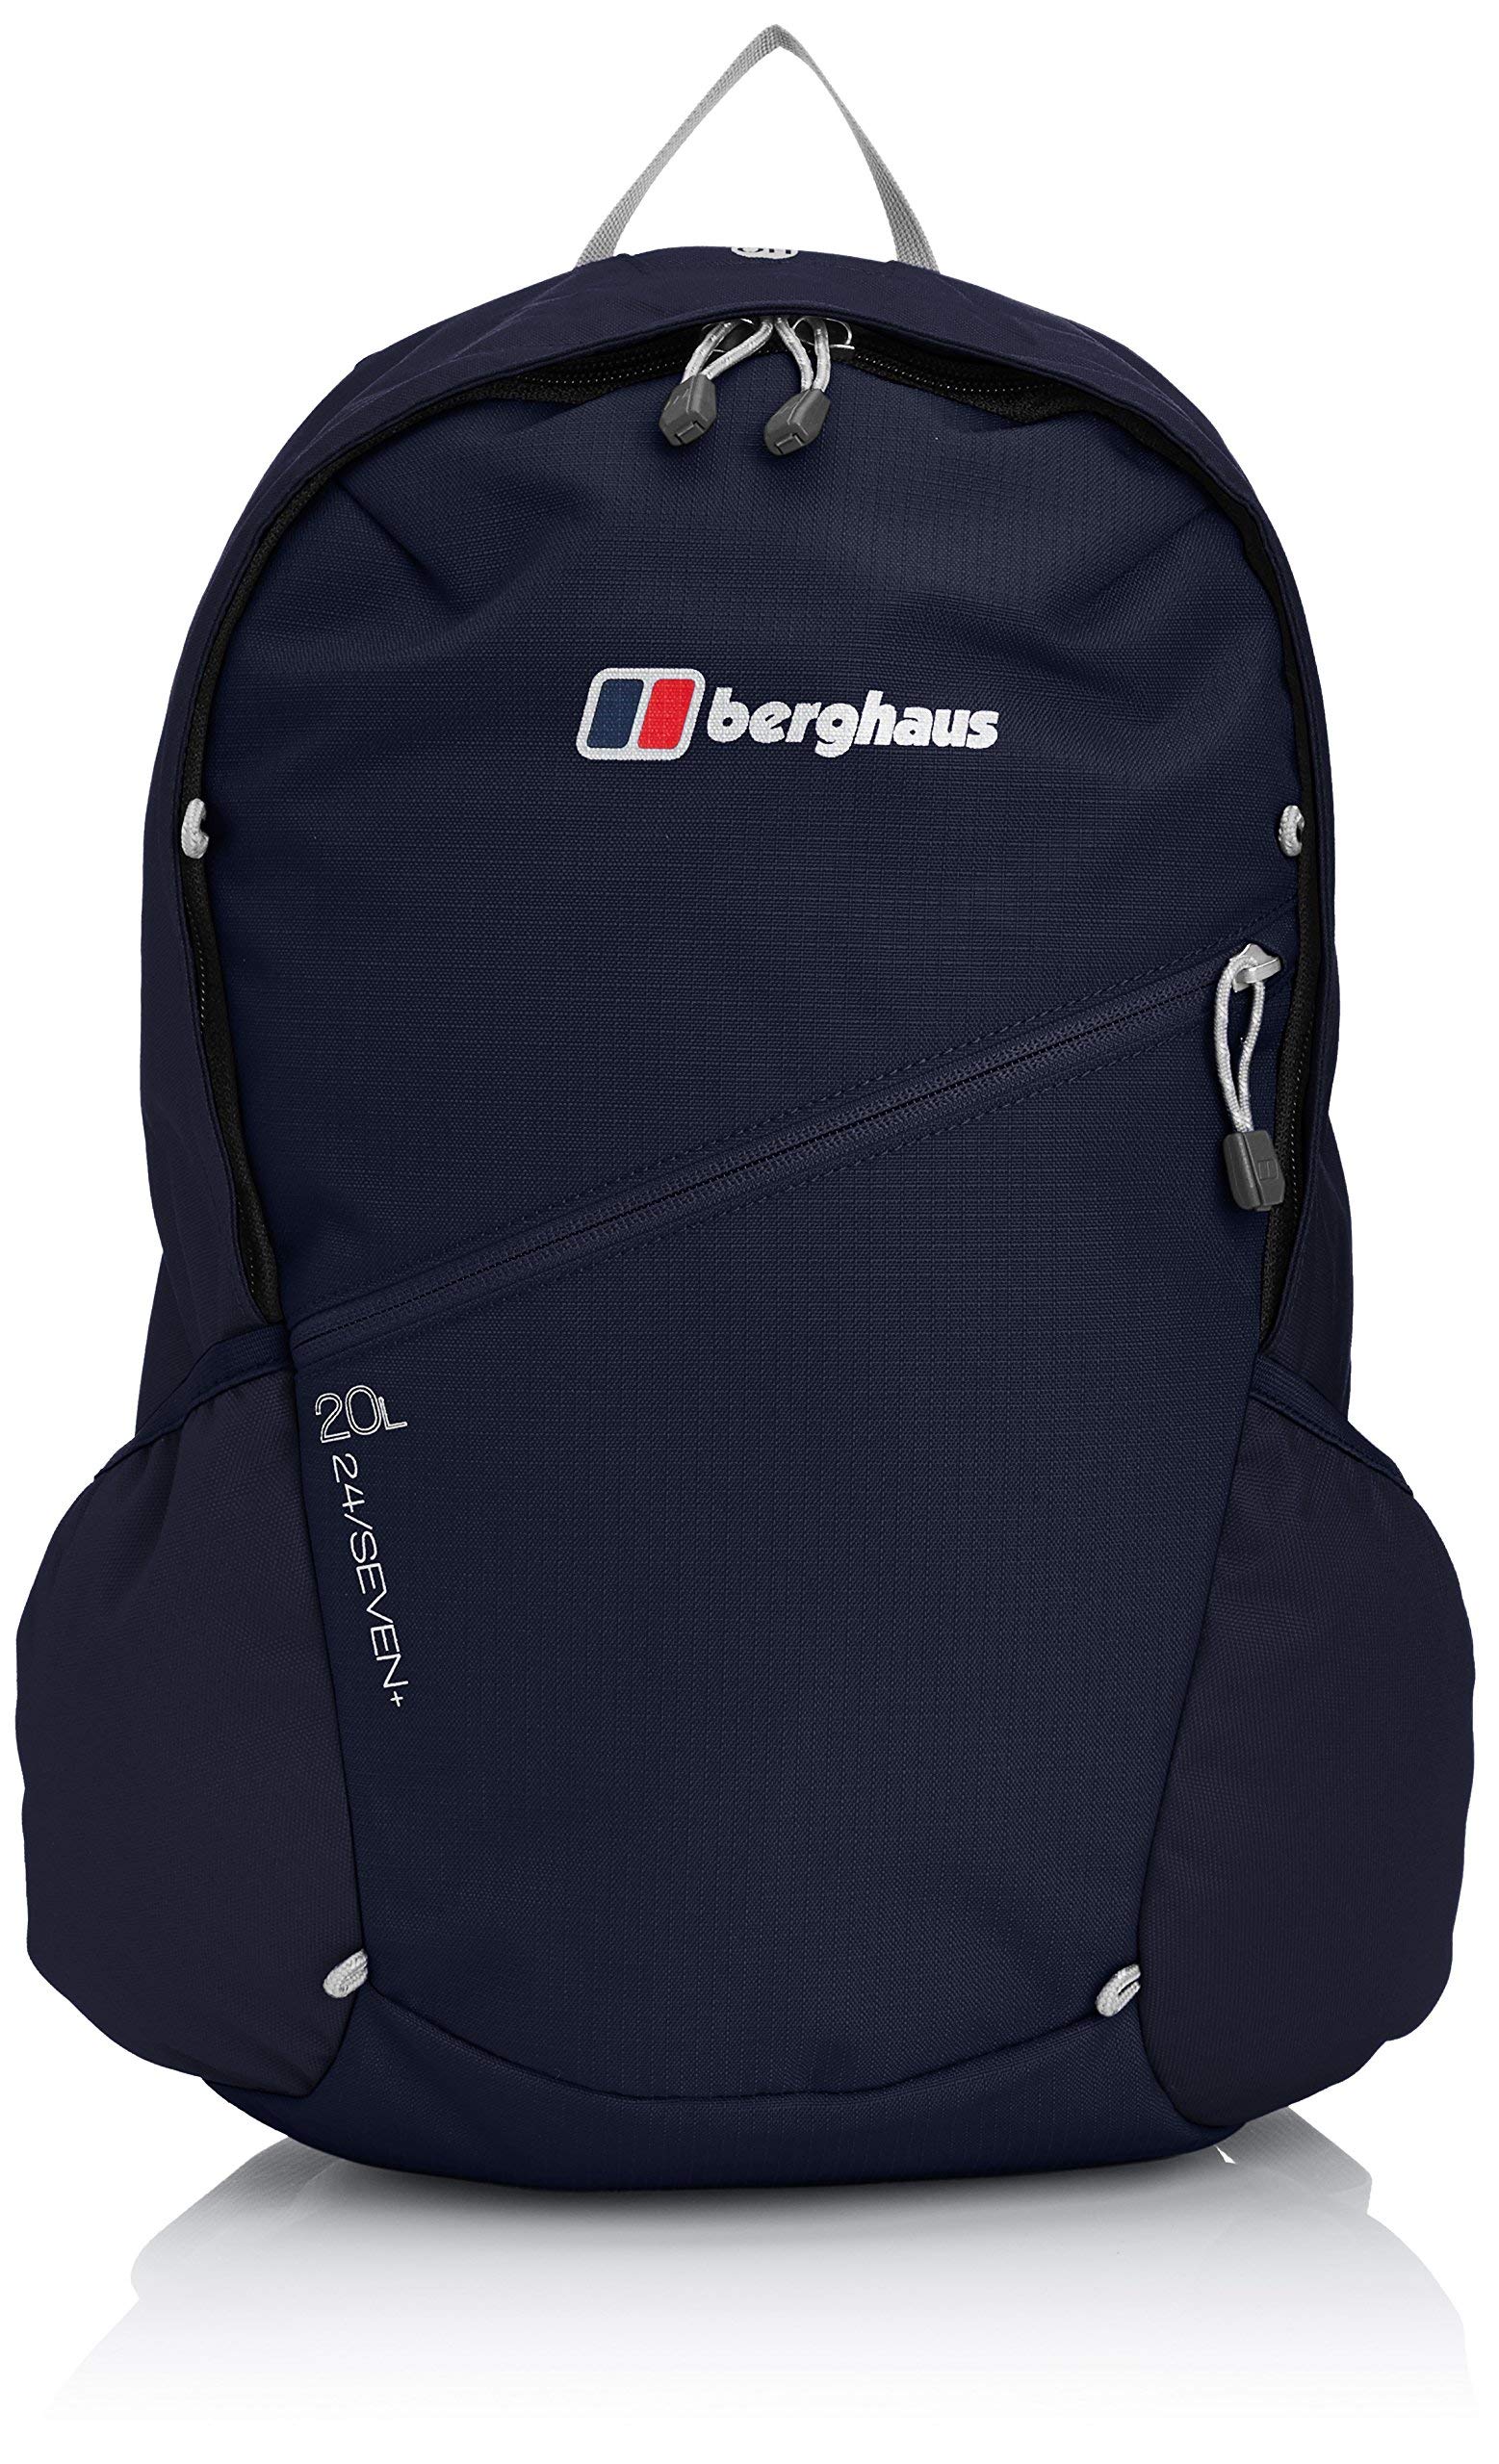 Berghaus Unisex Twnty4Seven Plus Backpack 20 Litre